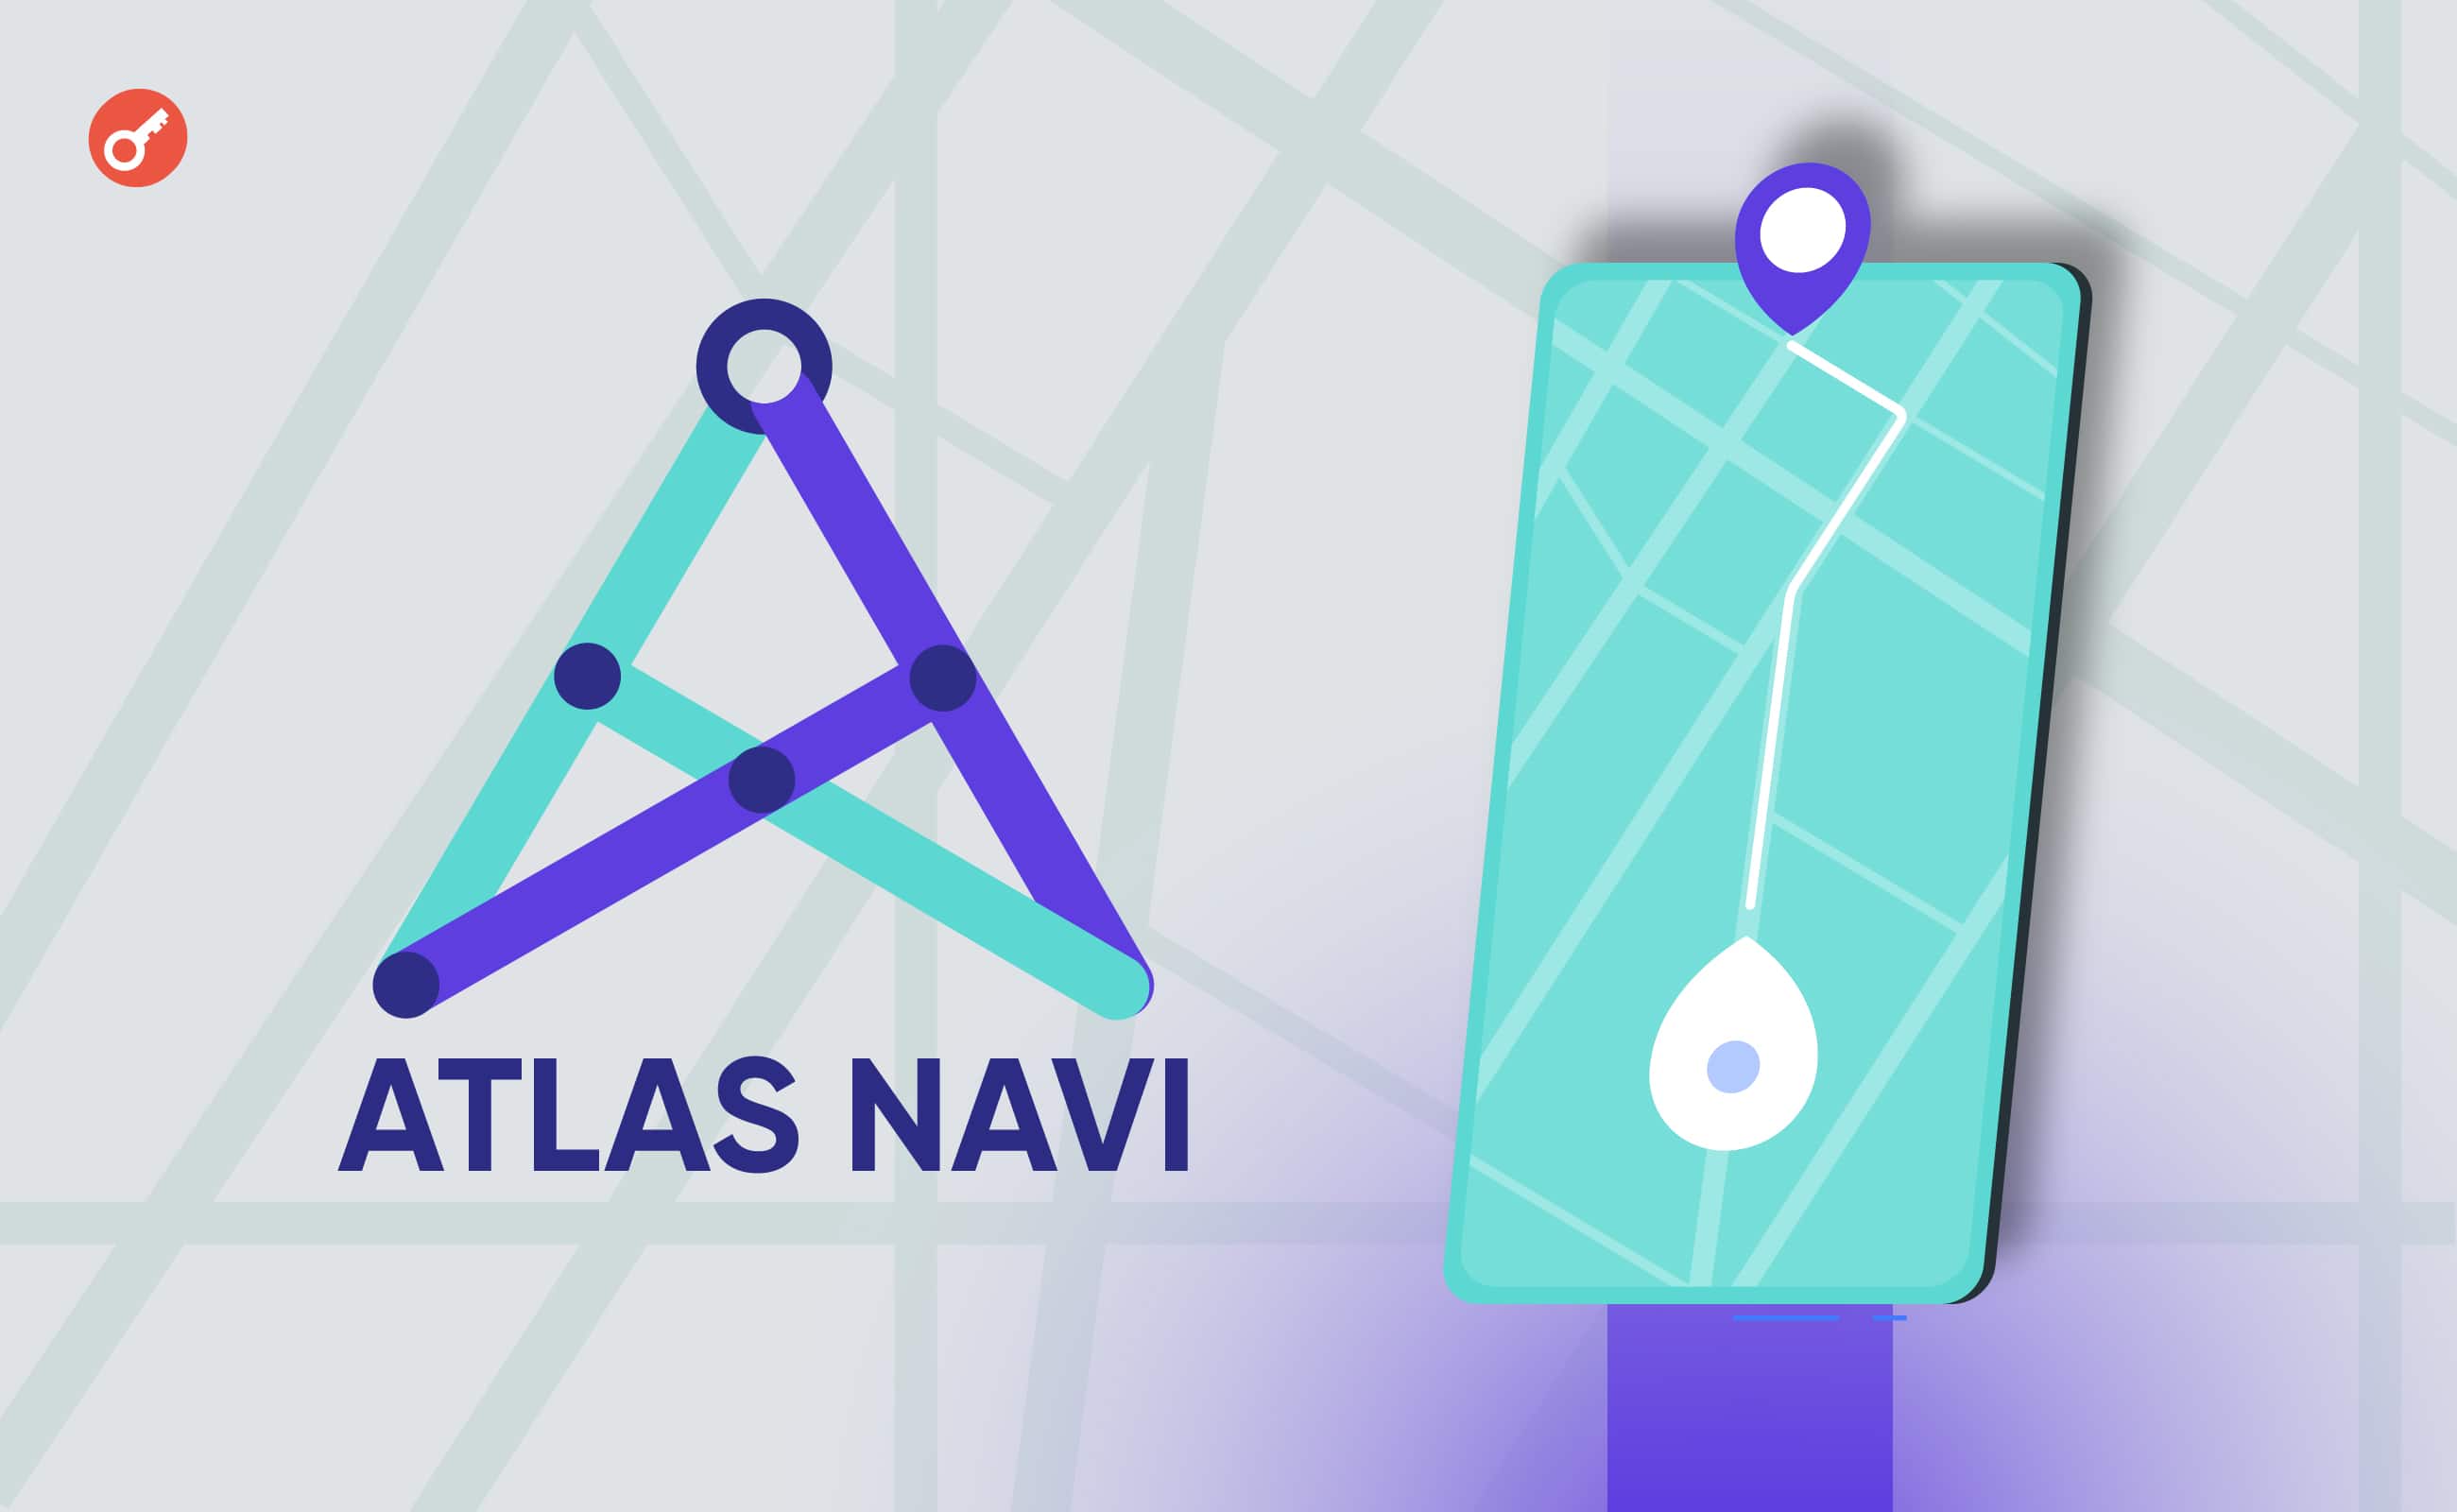 Atlas Navi представила ШІ-додаток для навігації з програмою винагород для водіїв. Головний колаж новини.